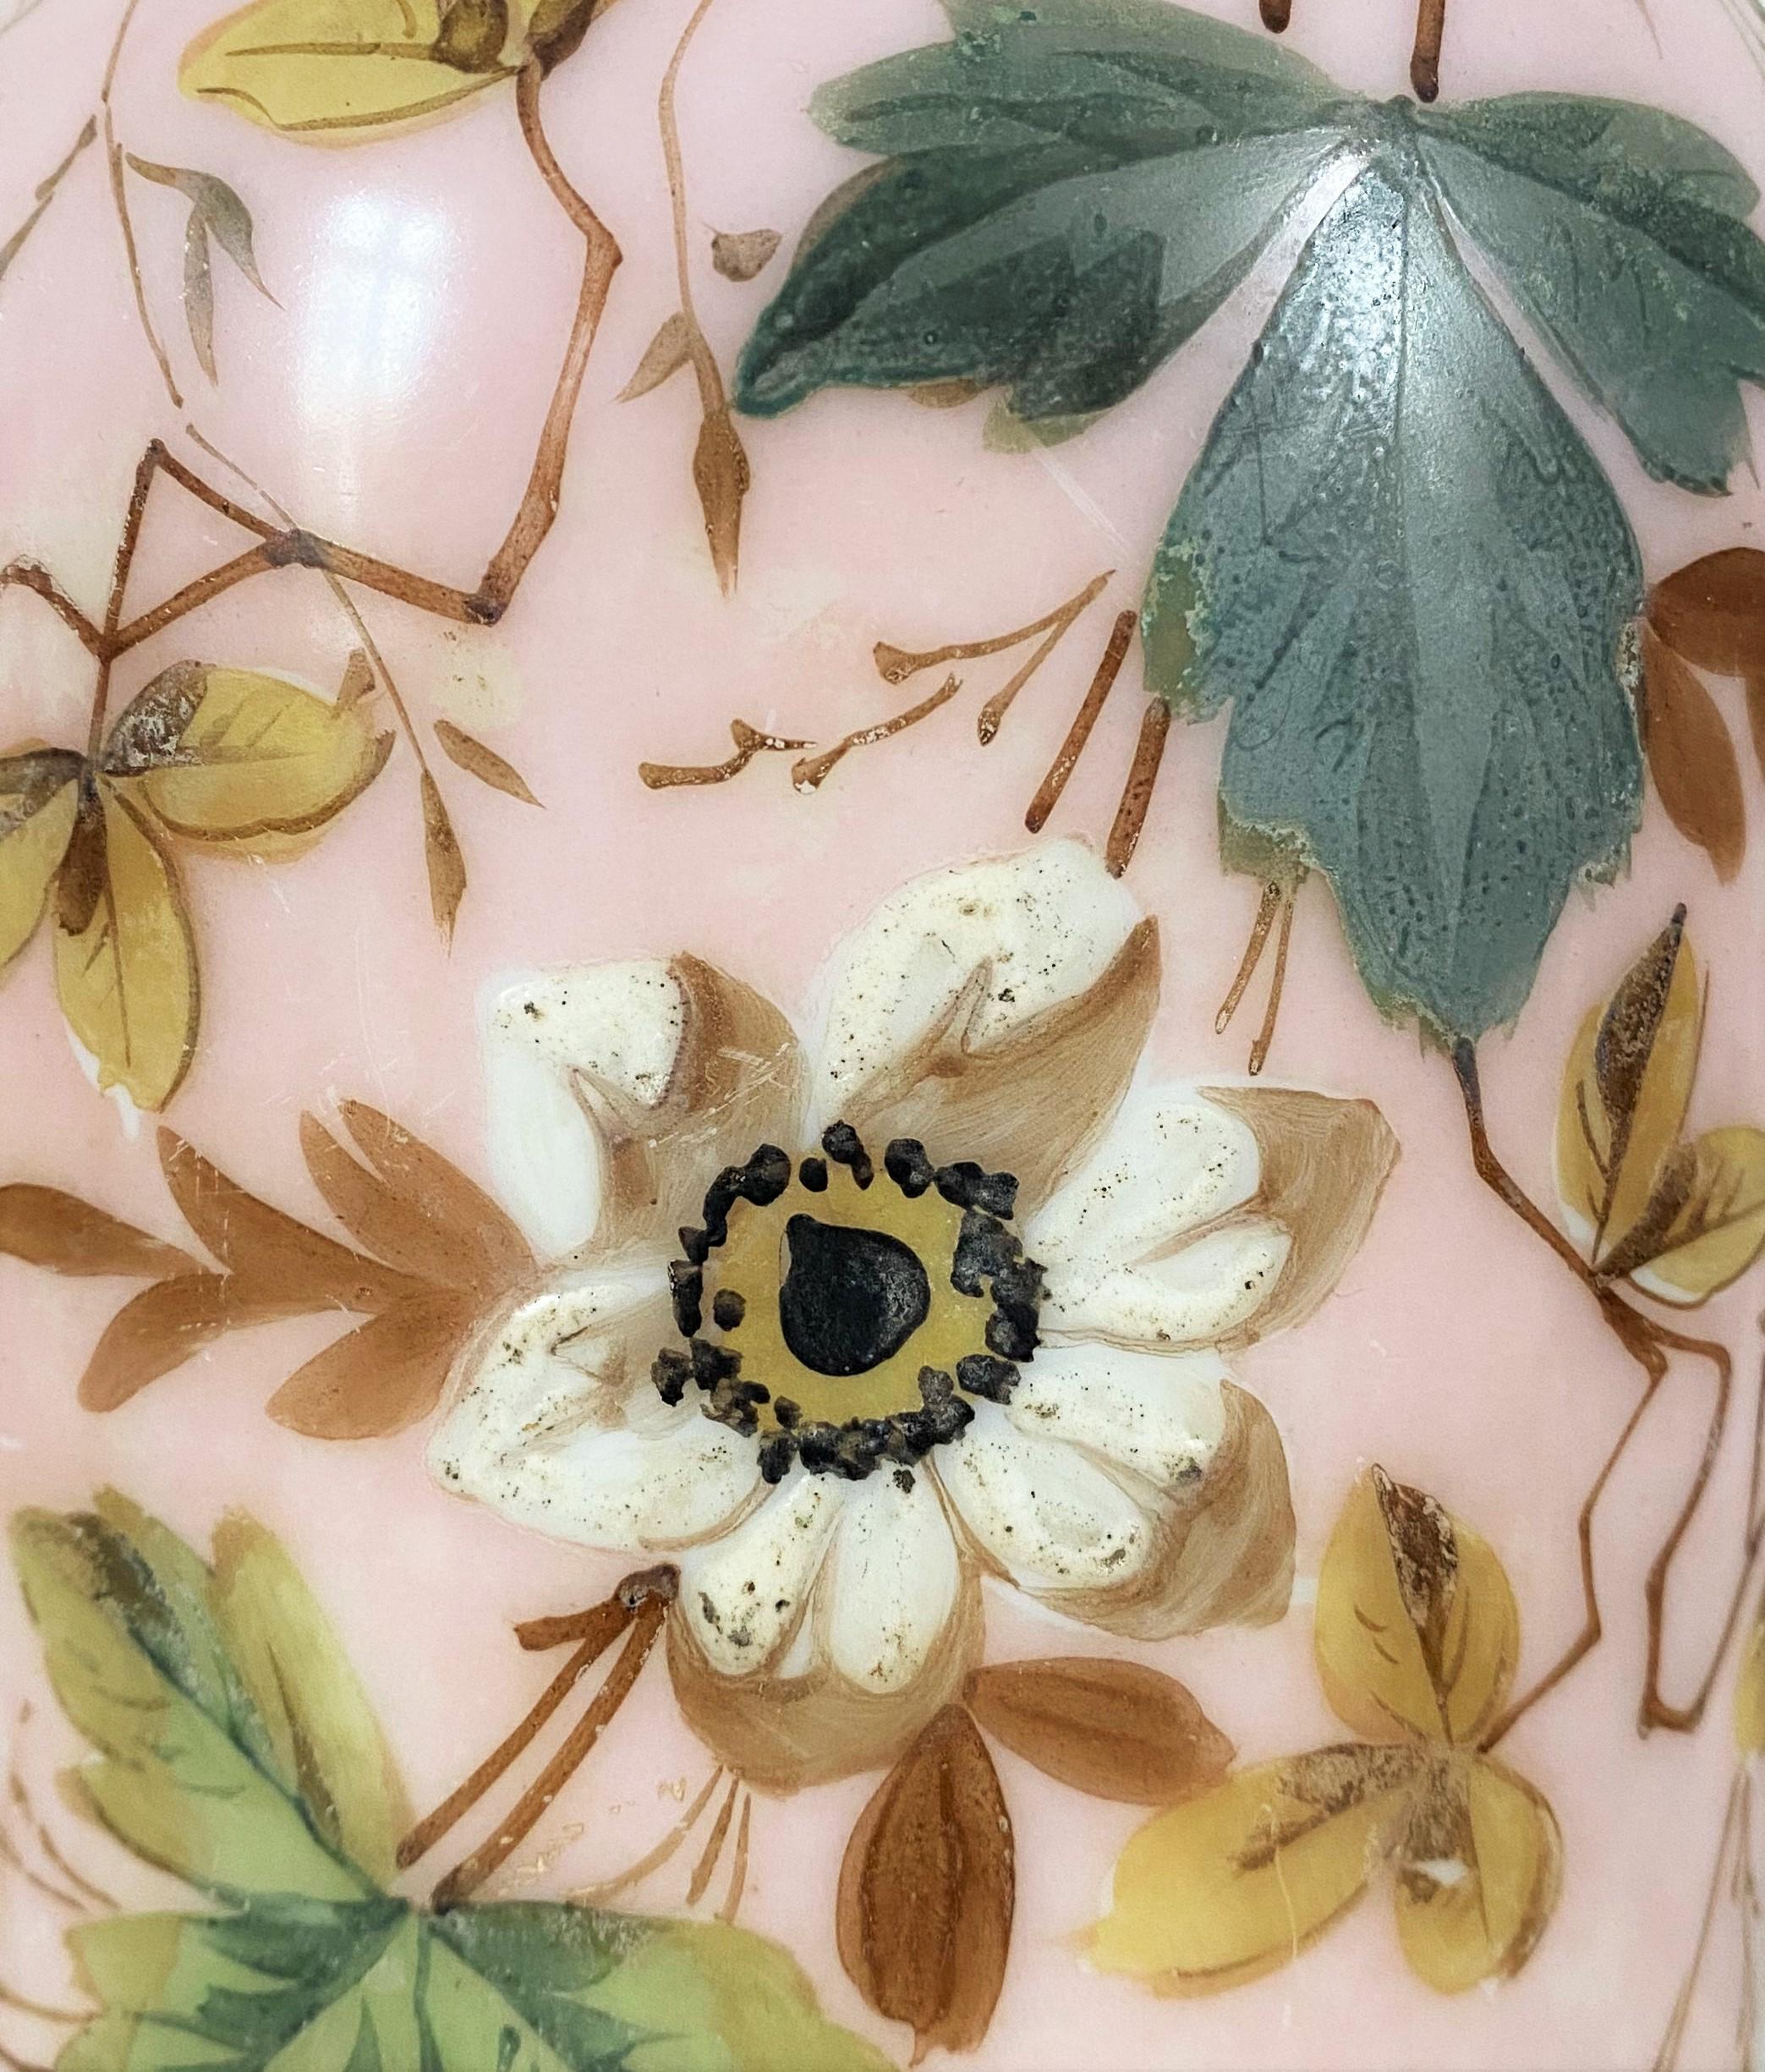 Très beau vase rose pâle d'époque Napoléon 3. Il est décoré de fleurs et de feuillages dans des tons bruns, blancs et verts. 
Il est en opaline, une technique utilisée pour imiter la porcelaine lorsque, en Chine, il était difficile d'apprendre la